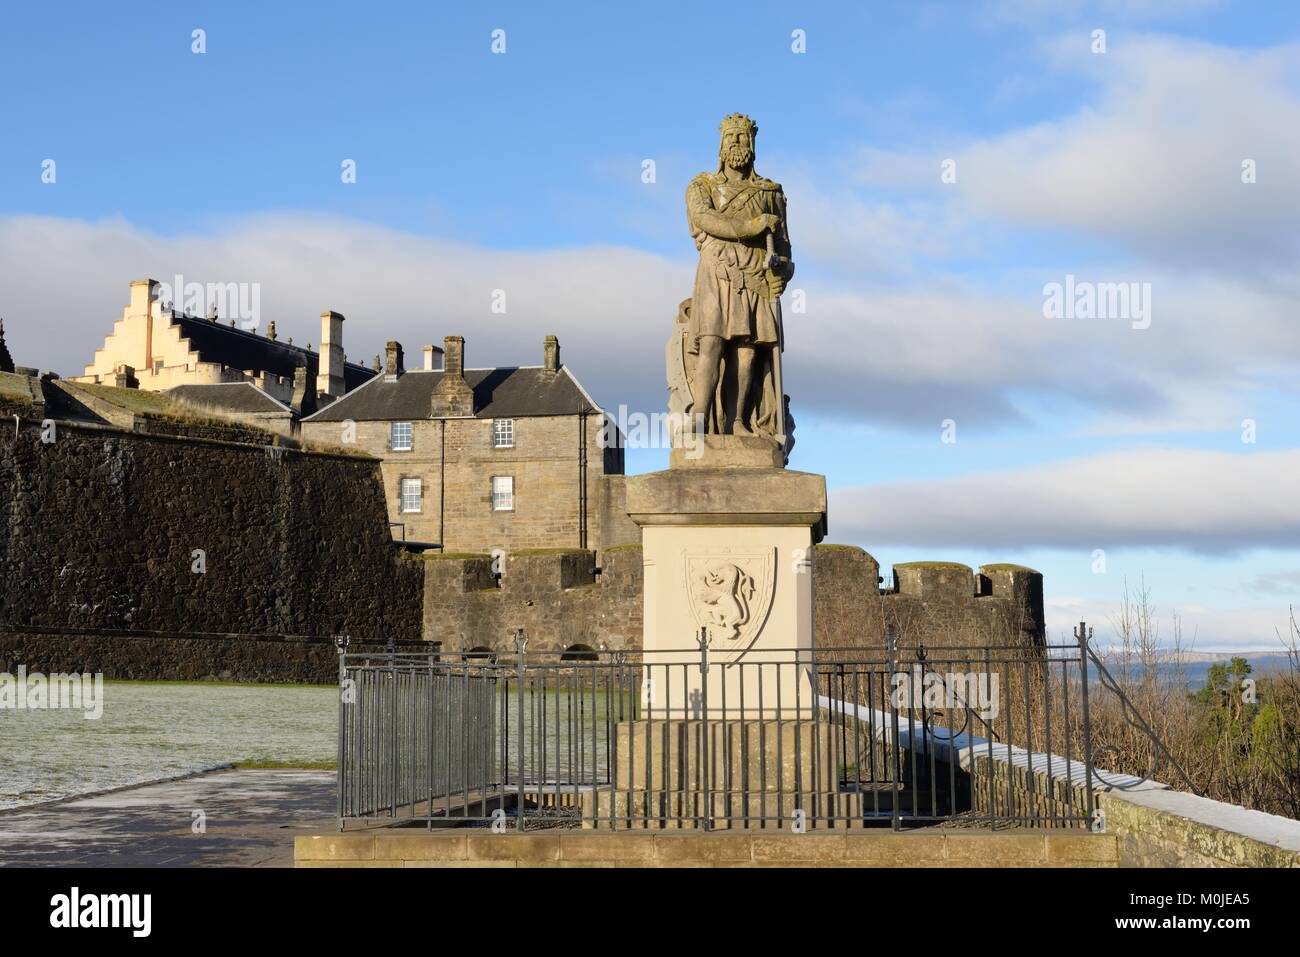 Rénovation statue du roi Robert Bruce sur l'esplanade au château de Stirling, Scotland, UK Banque D'Images